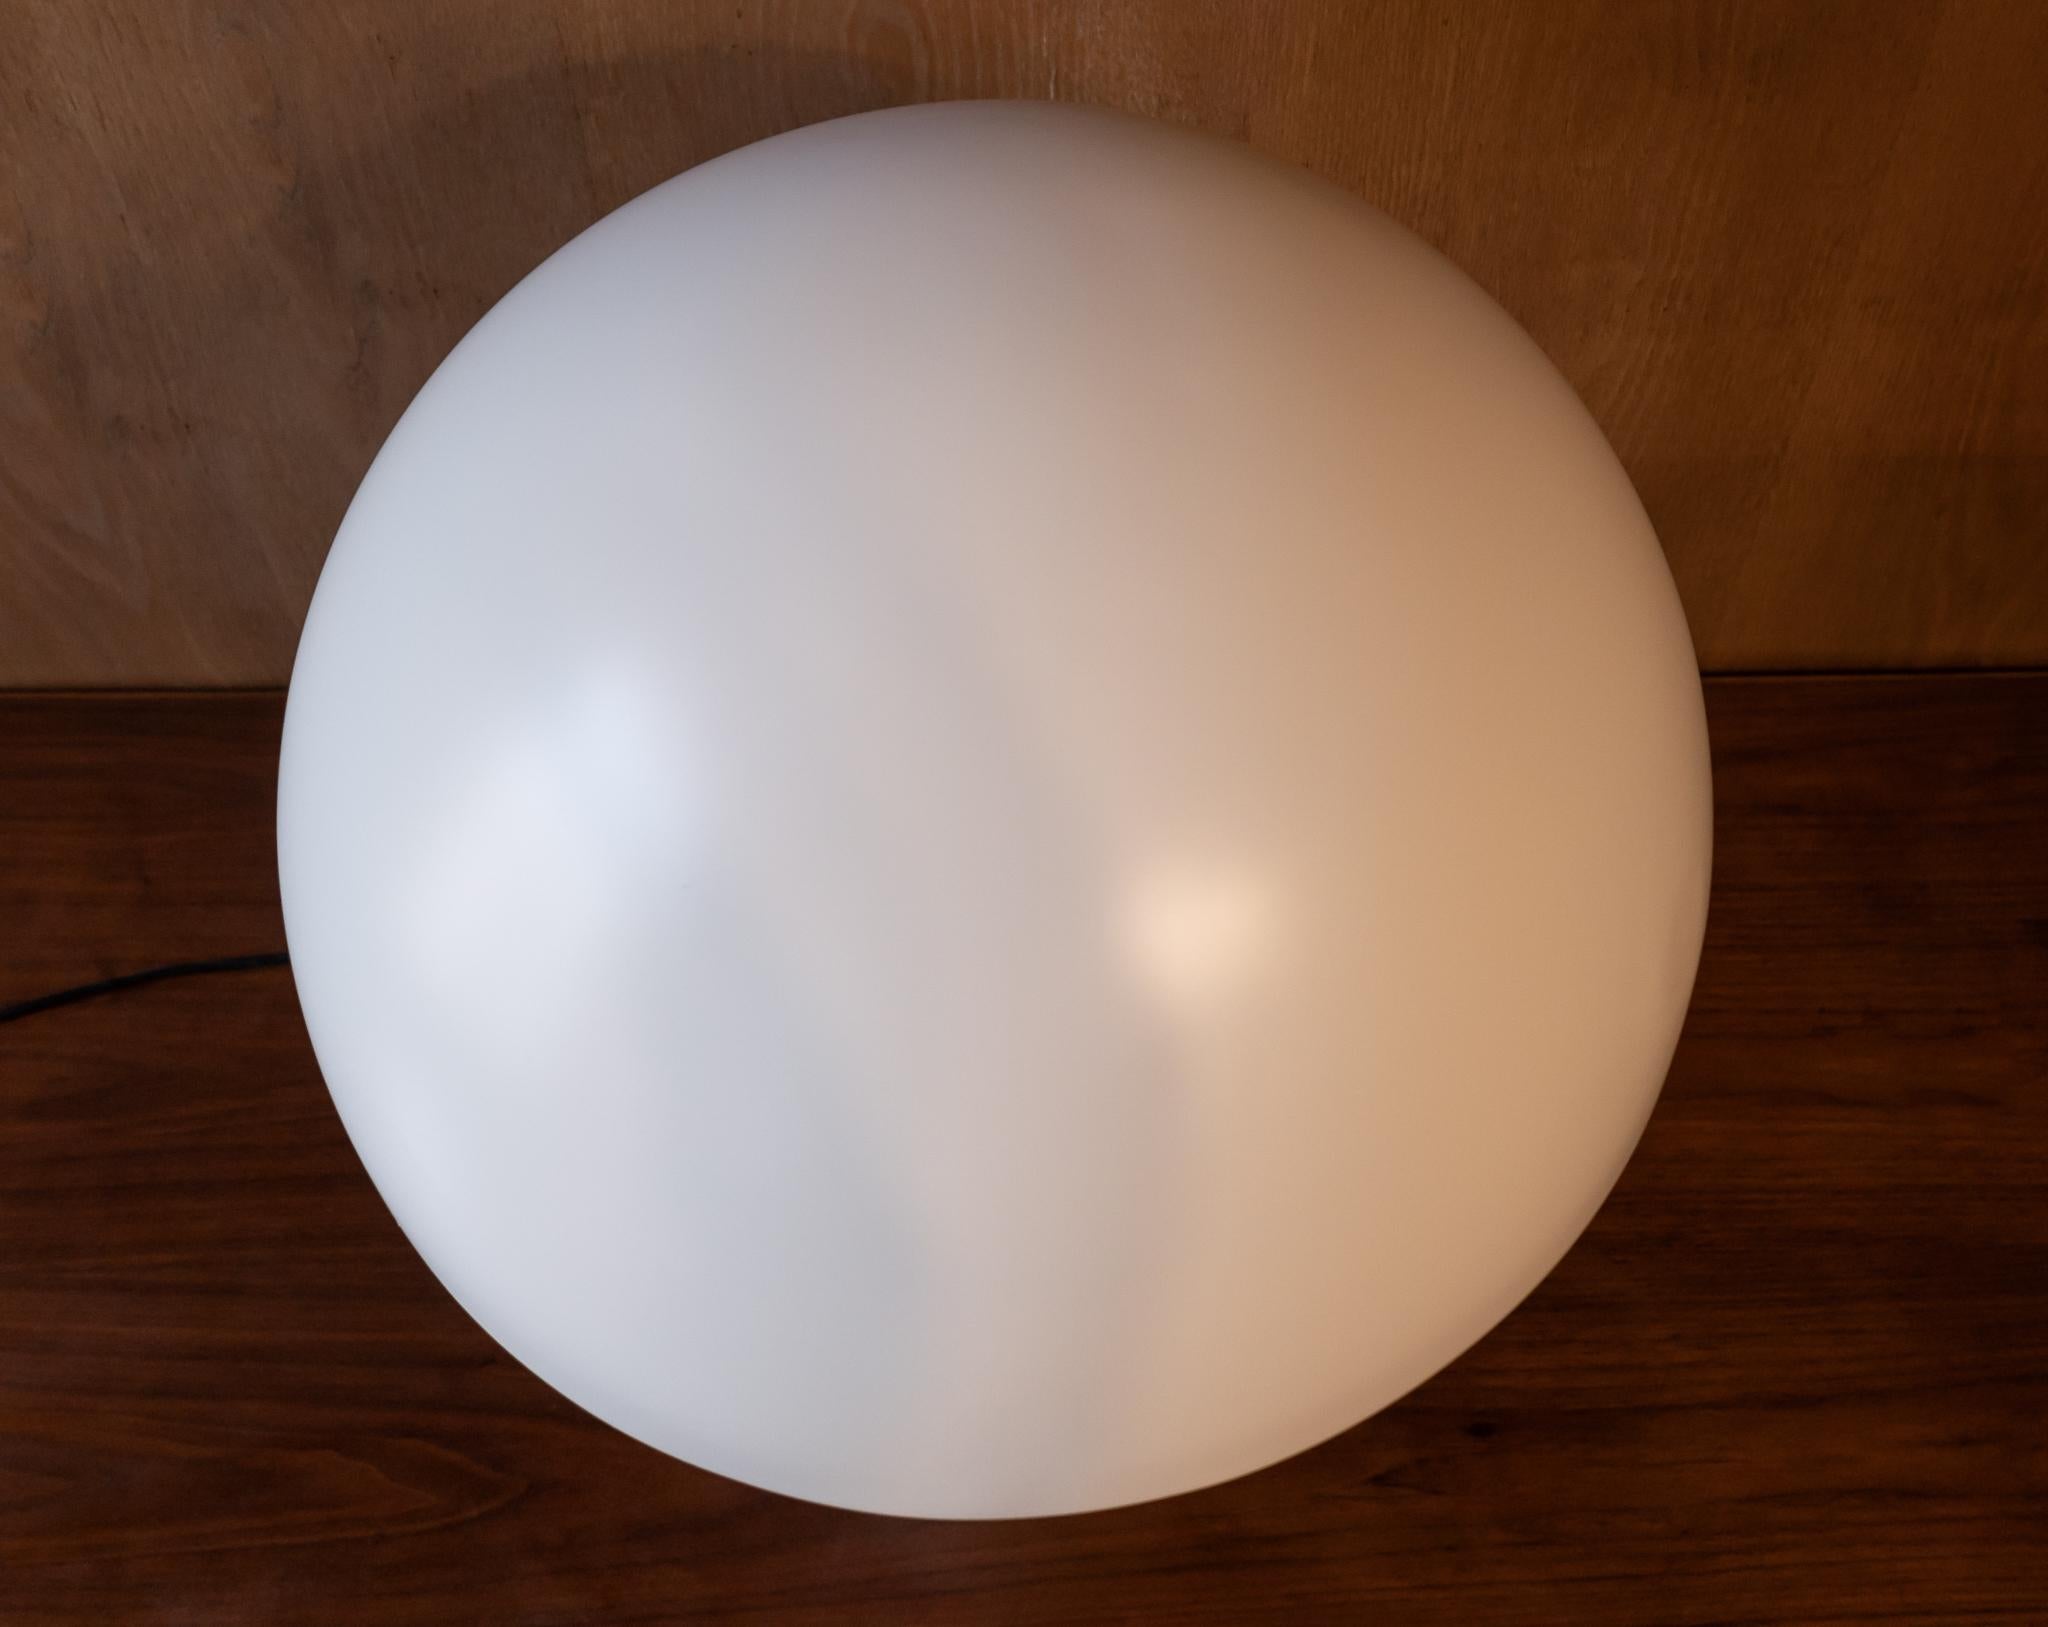 Lampe de table en métal blanc moderne du milieu du siècle Atollo 233 par Vico Magistretti, années 1970.

Fabriqué en métal blanc lustré, l'Atollo 233 respire la sophistication et le raffinement. Sa silhouette distinctive en forme de champignon est